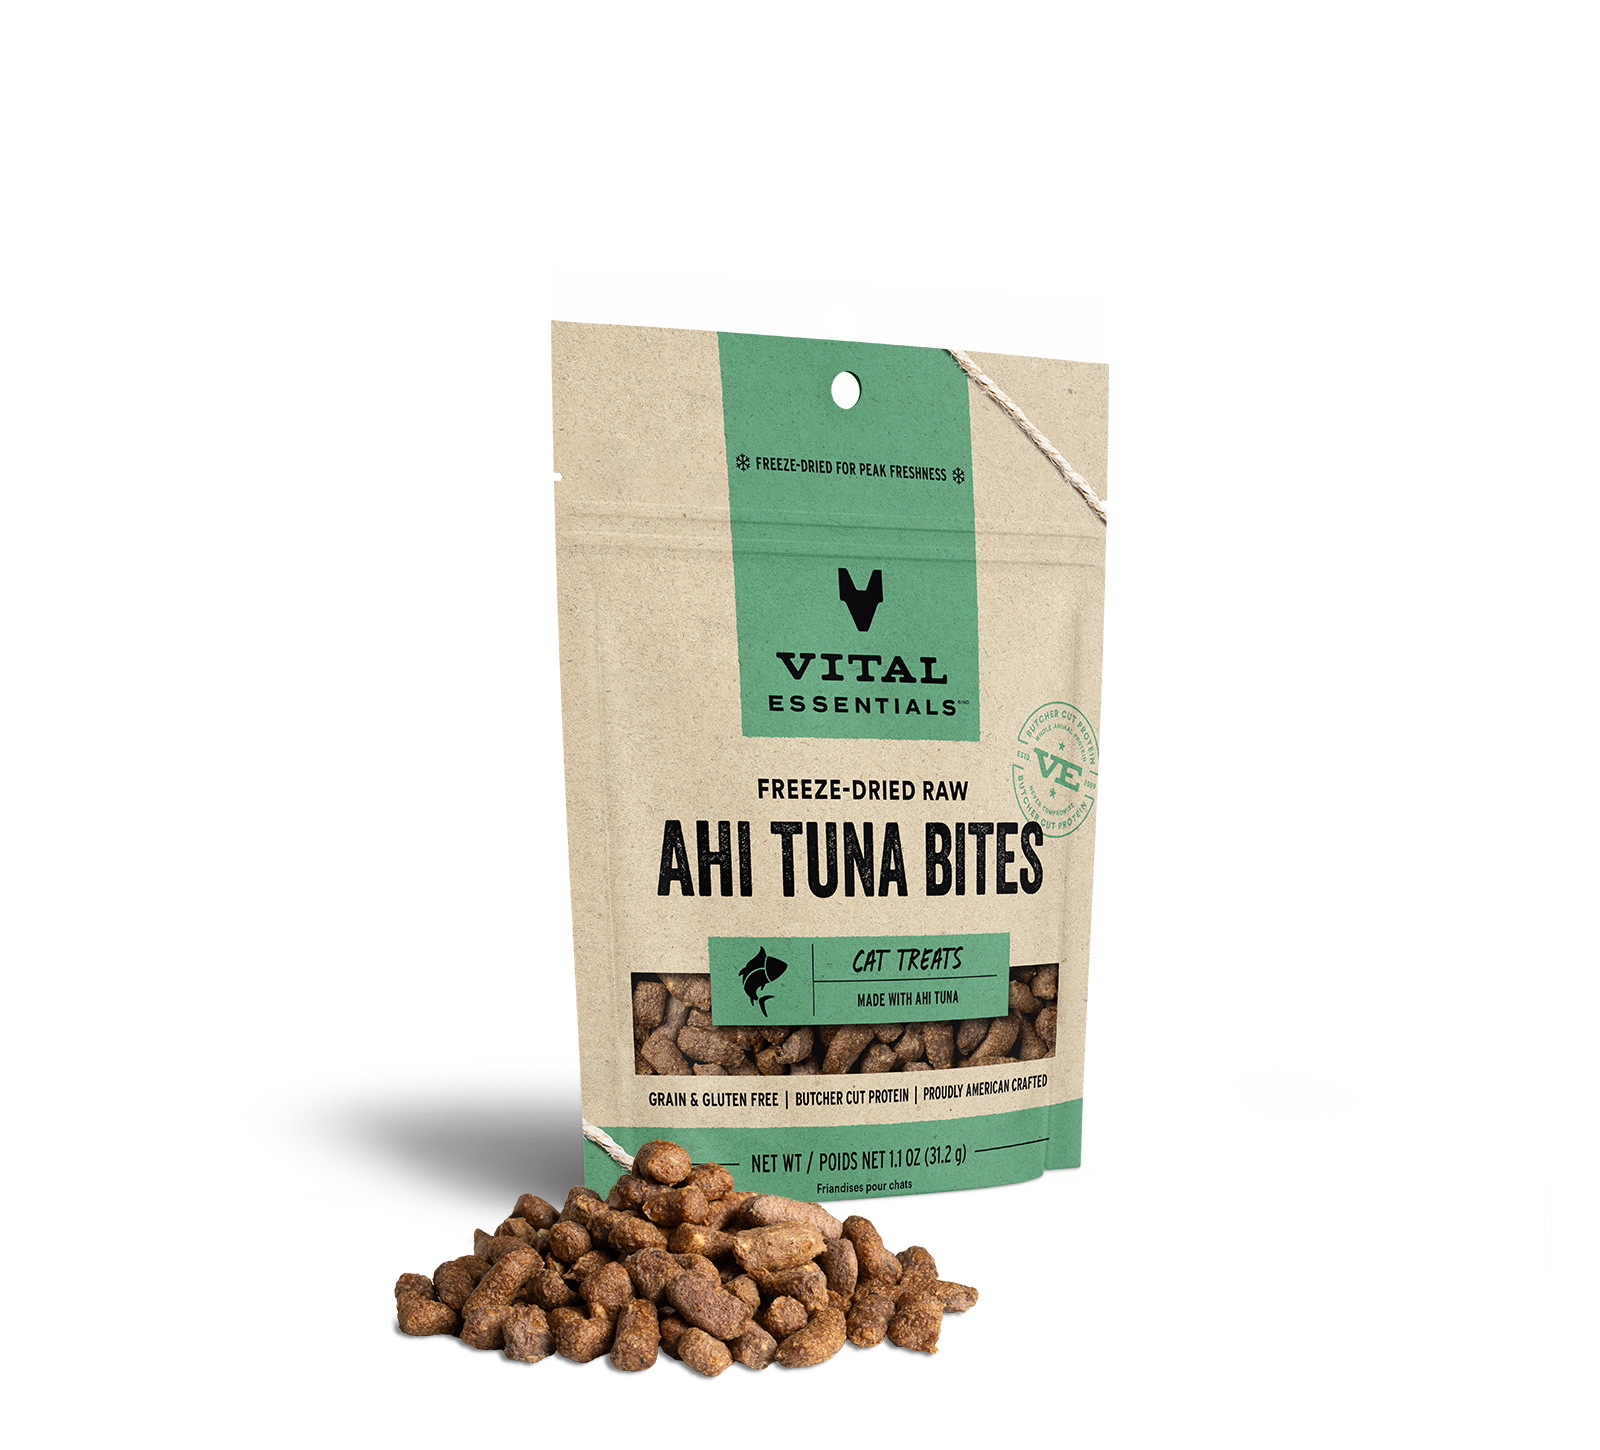 Vital Essentials Freeze-Dried Ahi Tuna Bites Cat Treats, 1.1 oz - Health/First Aid